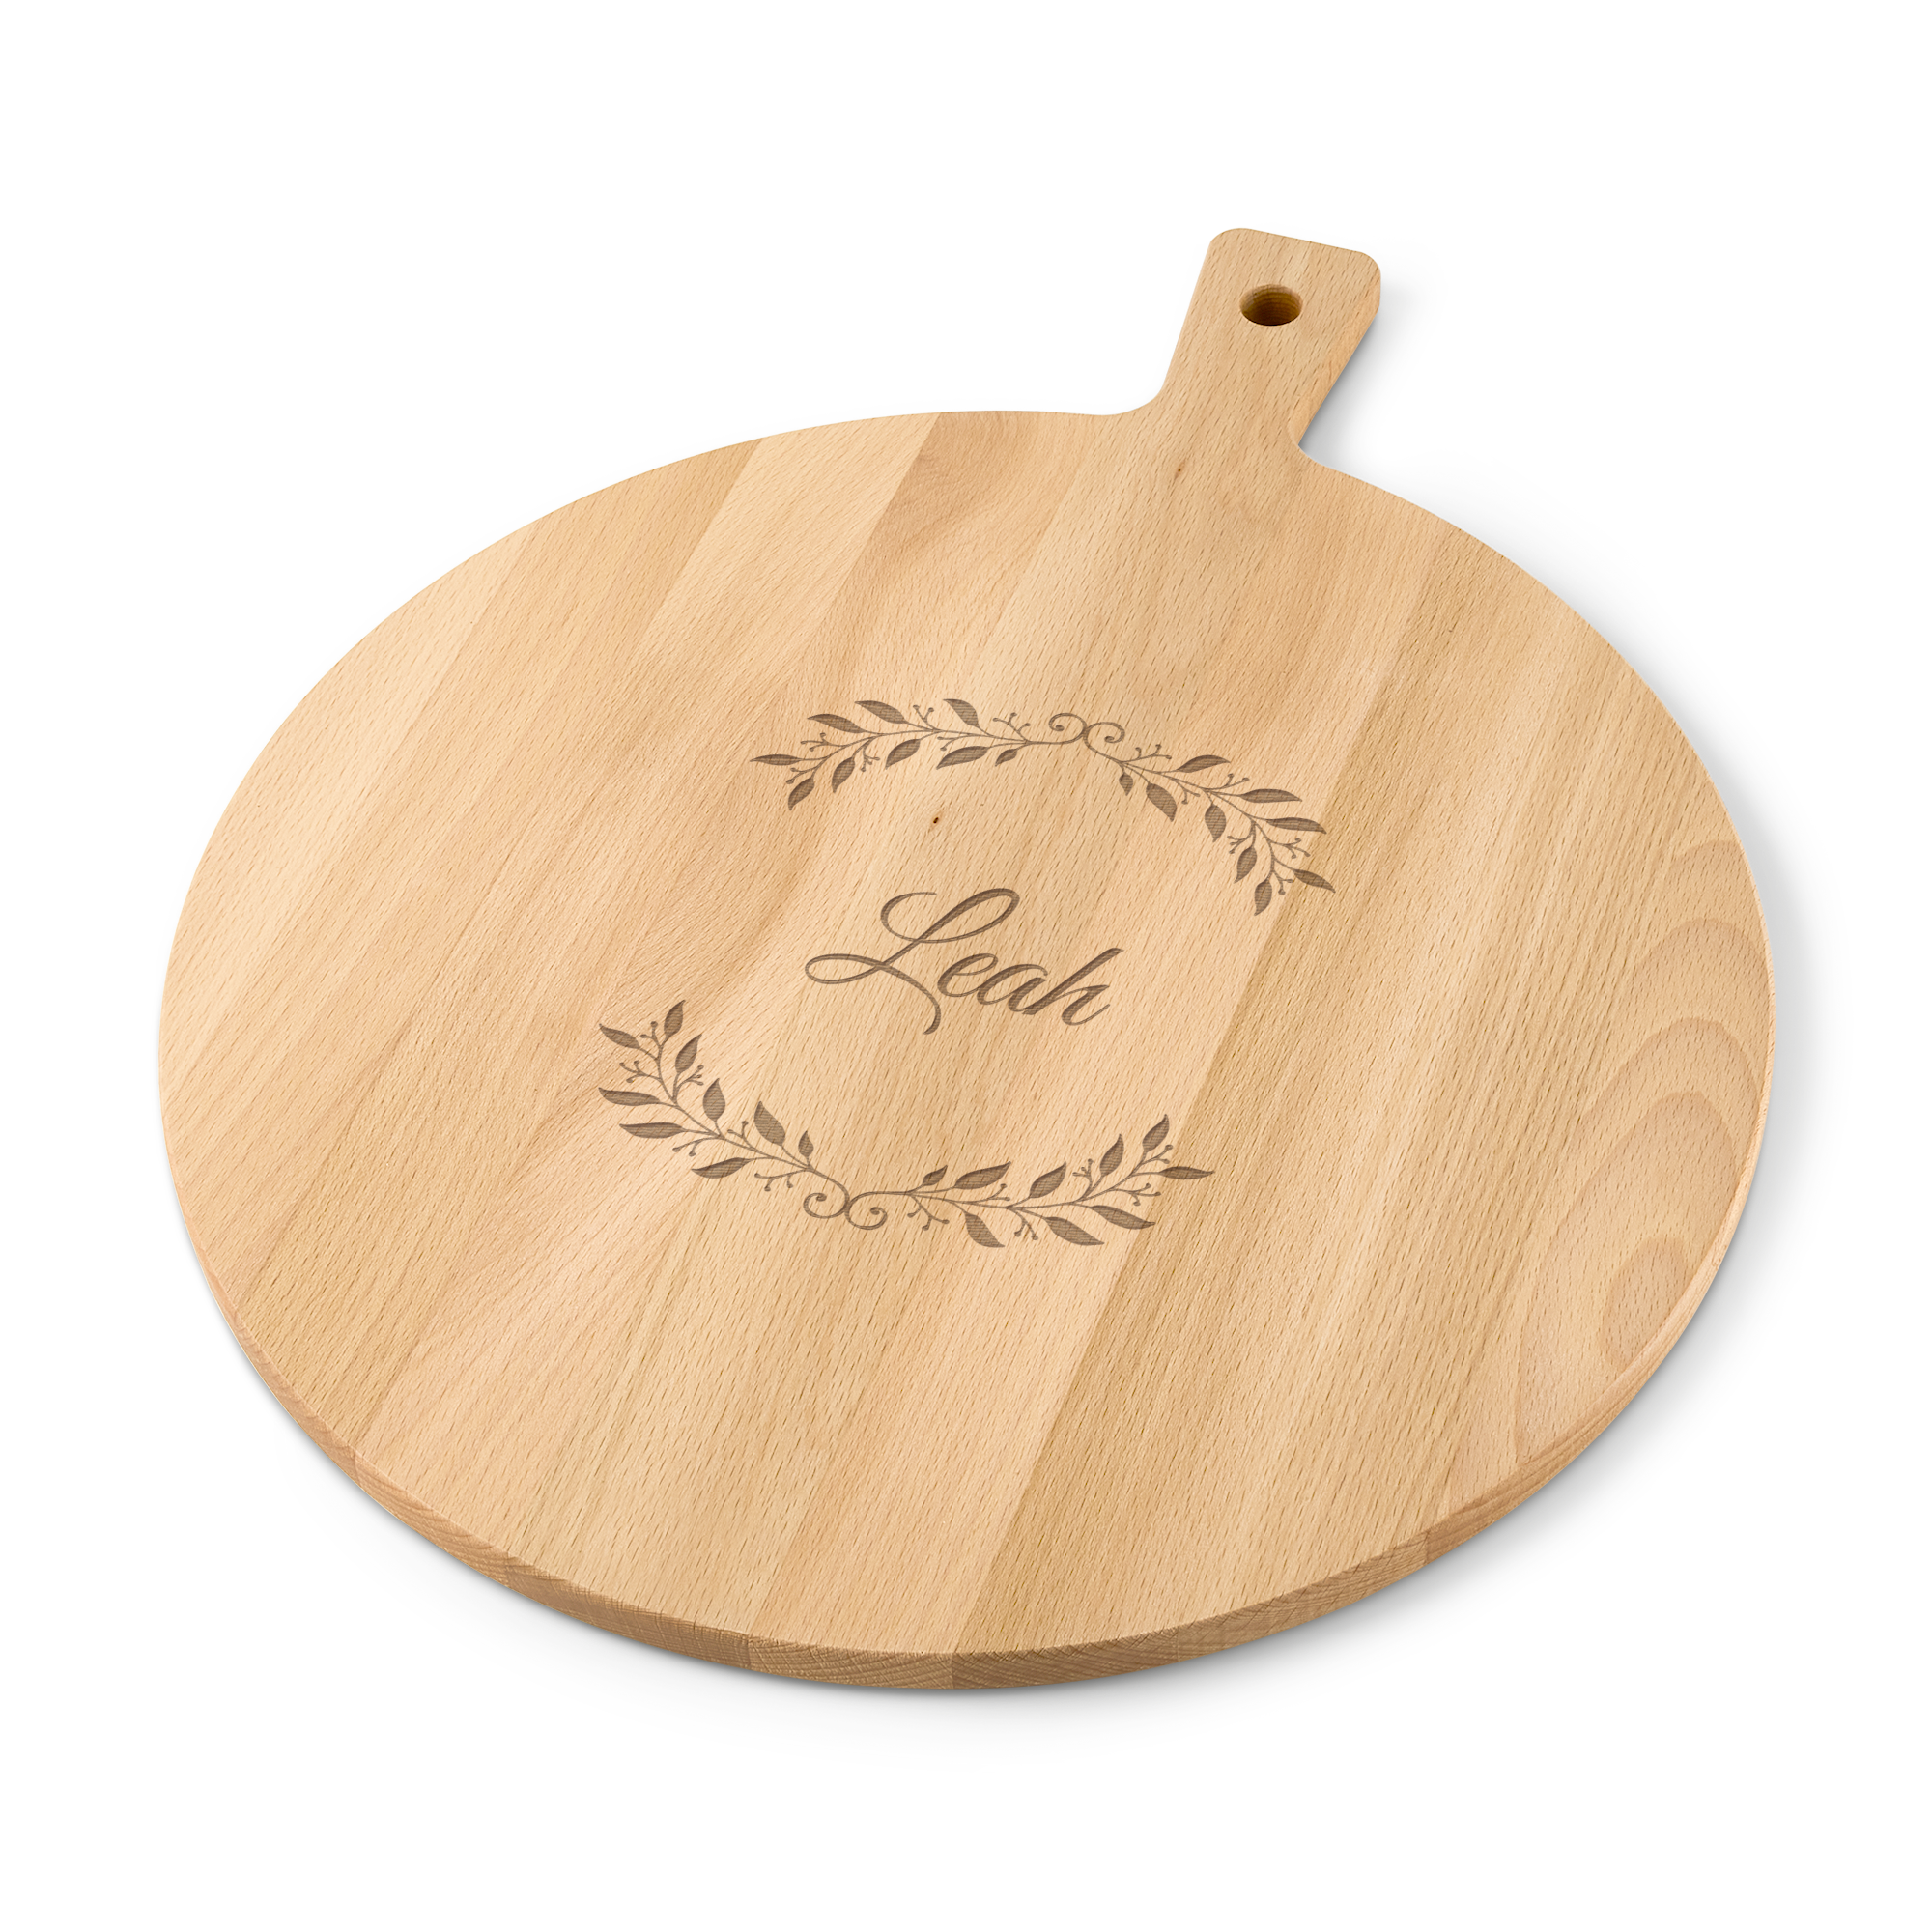 Wooden serving platter - Beech wood - Round (M)